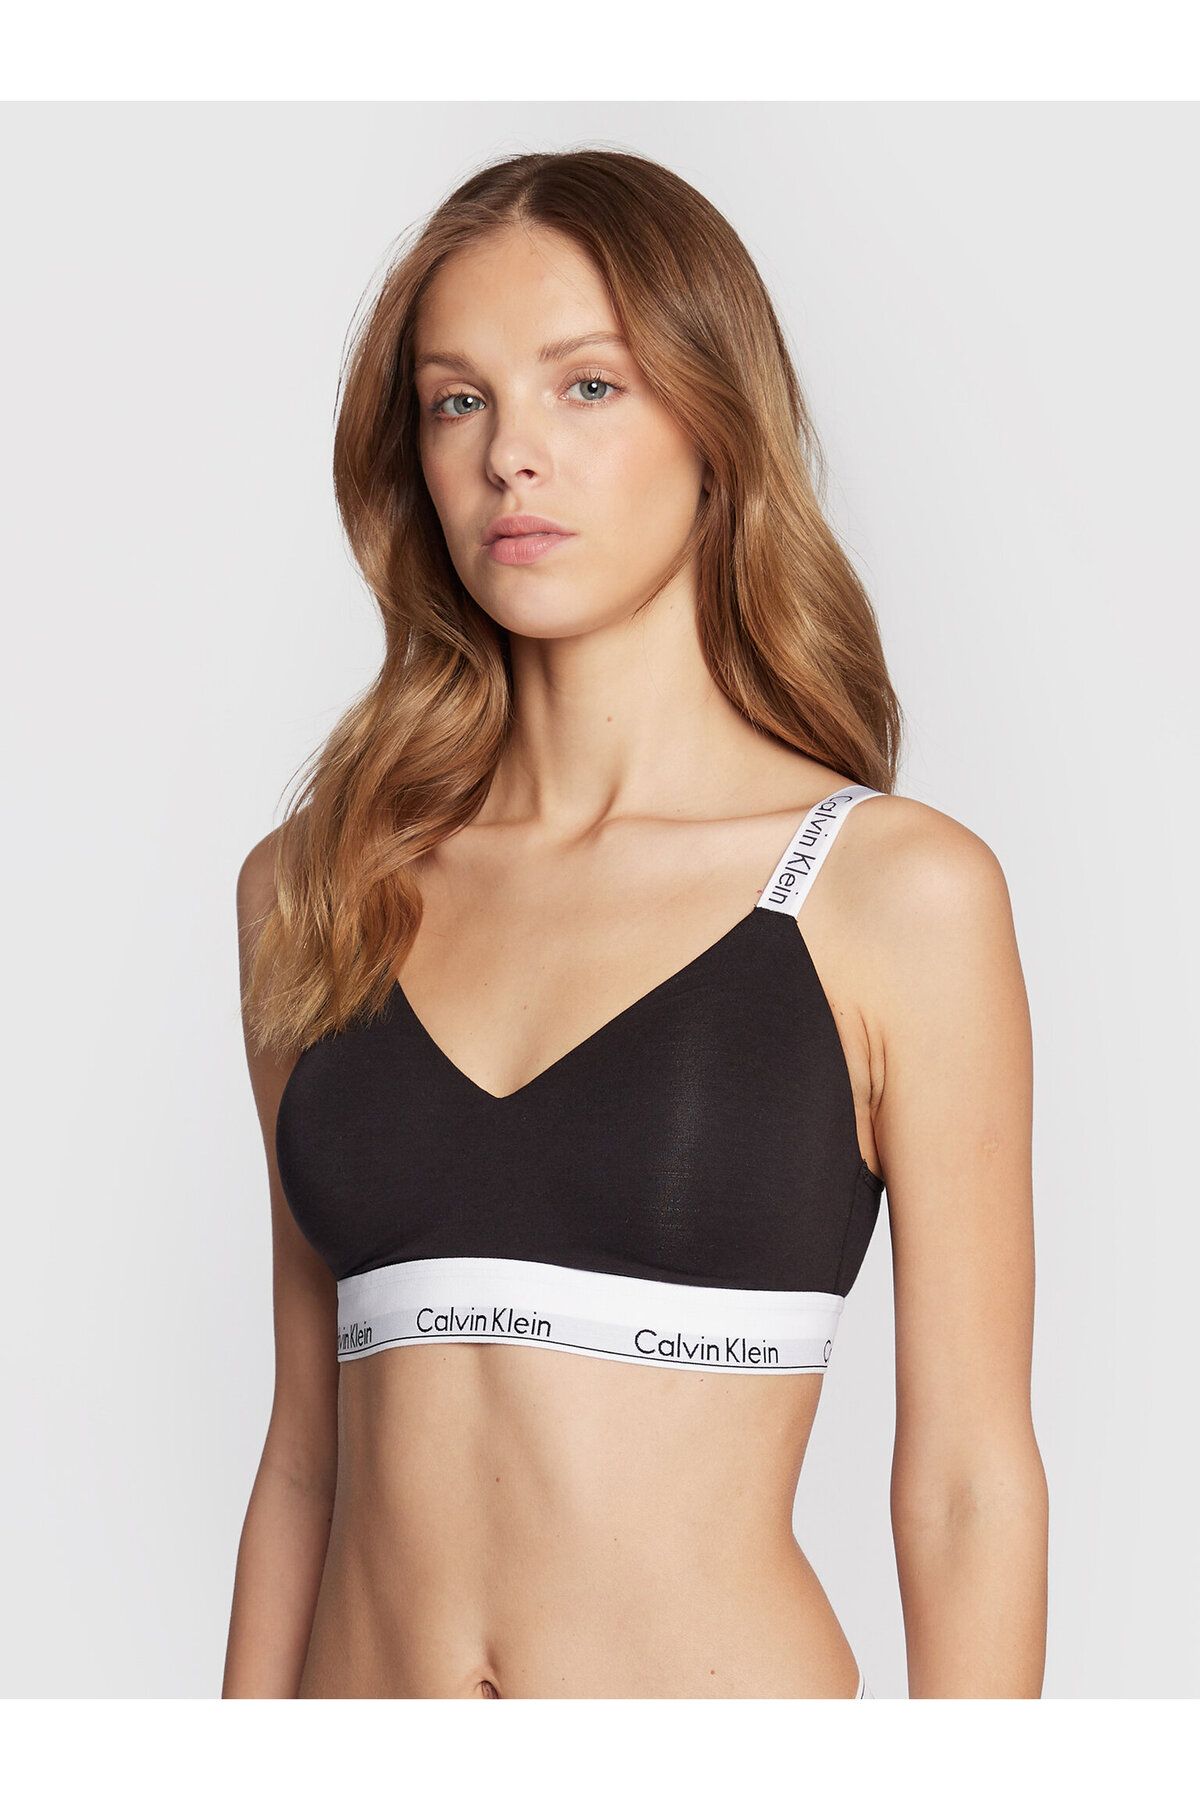 Calvin Klein Kadın Marka Logolu Askılı Spor Giyim Günlük Siyah Büstiyer 000QF7060E-UB1